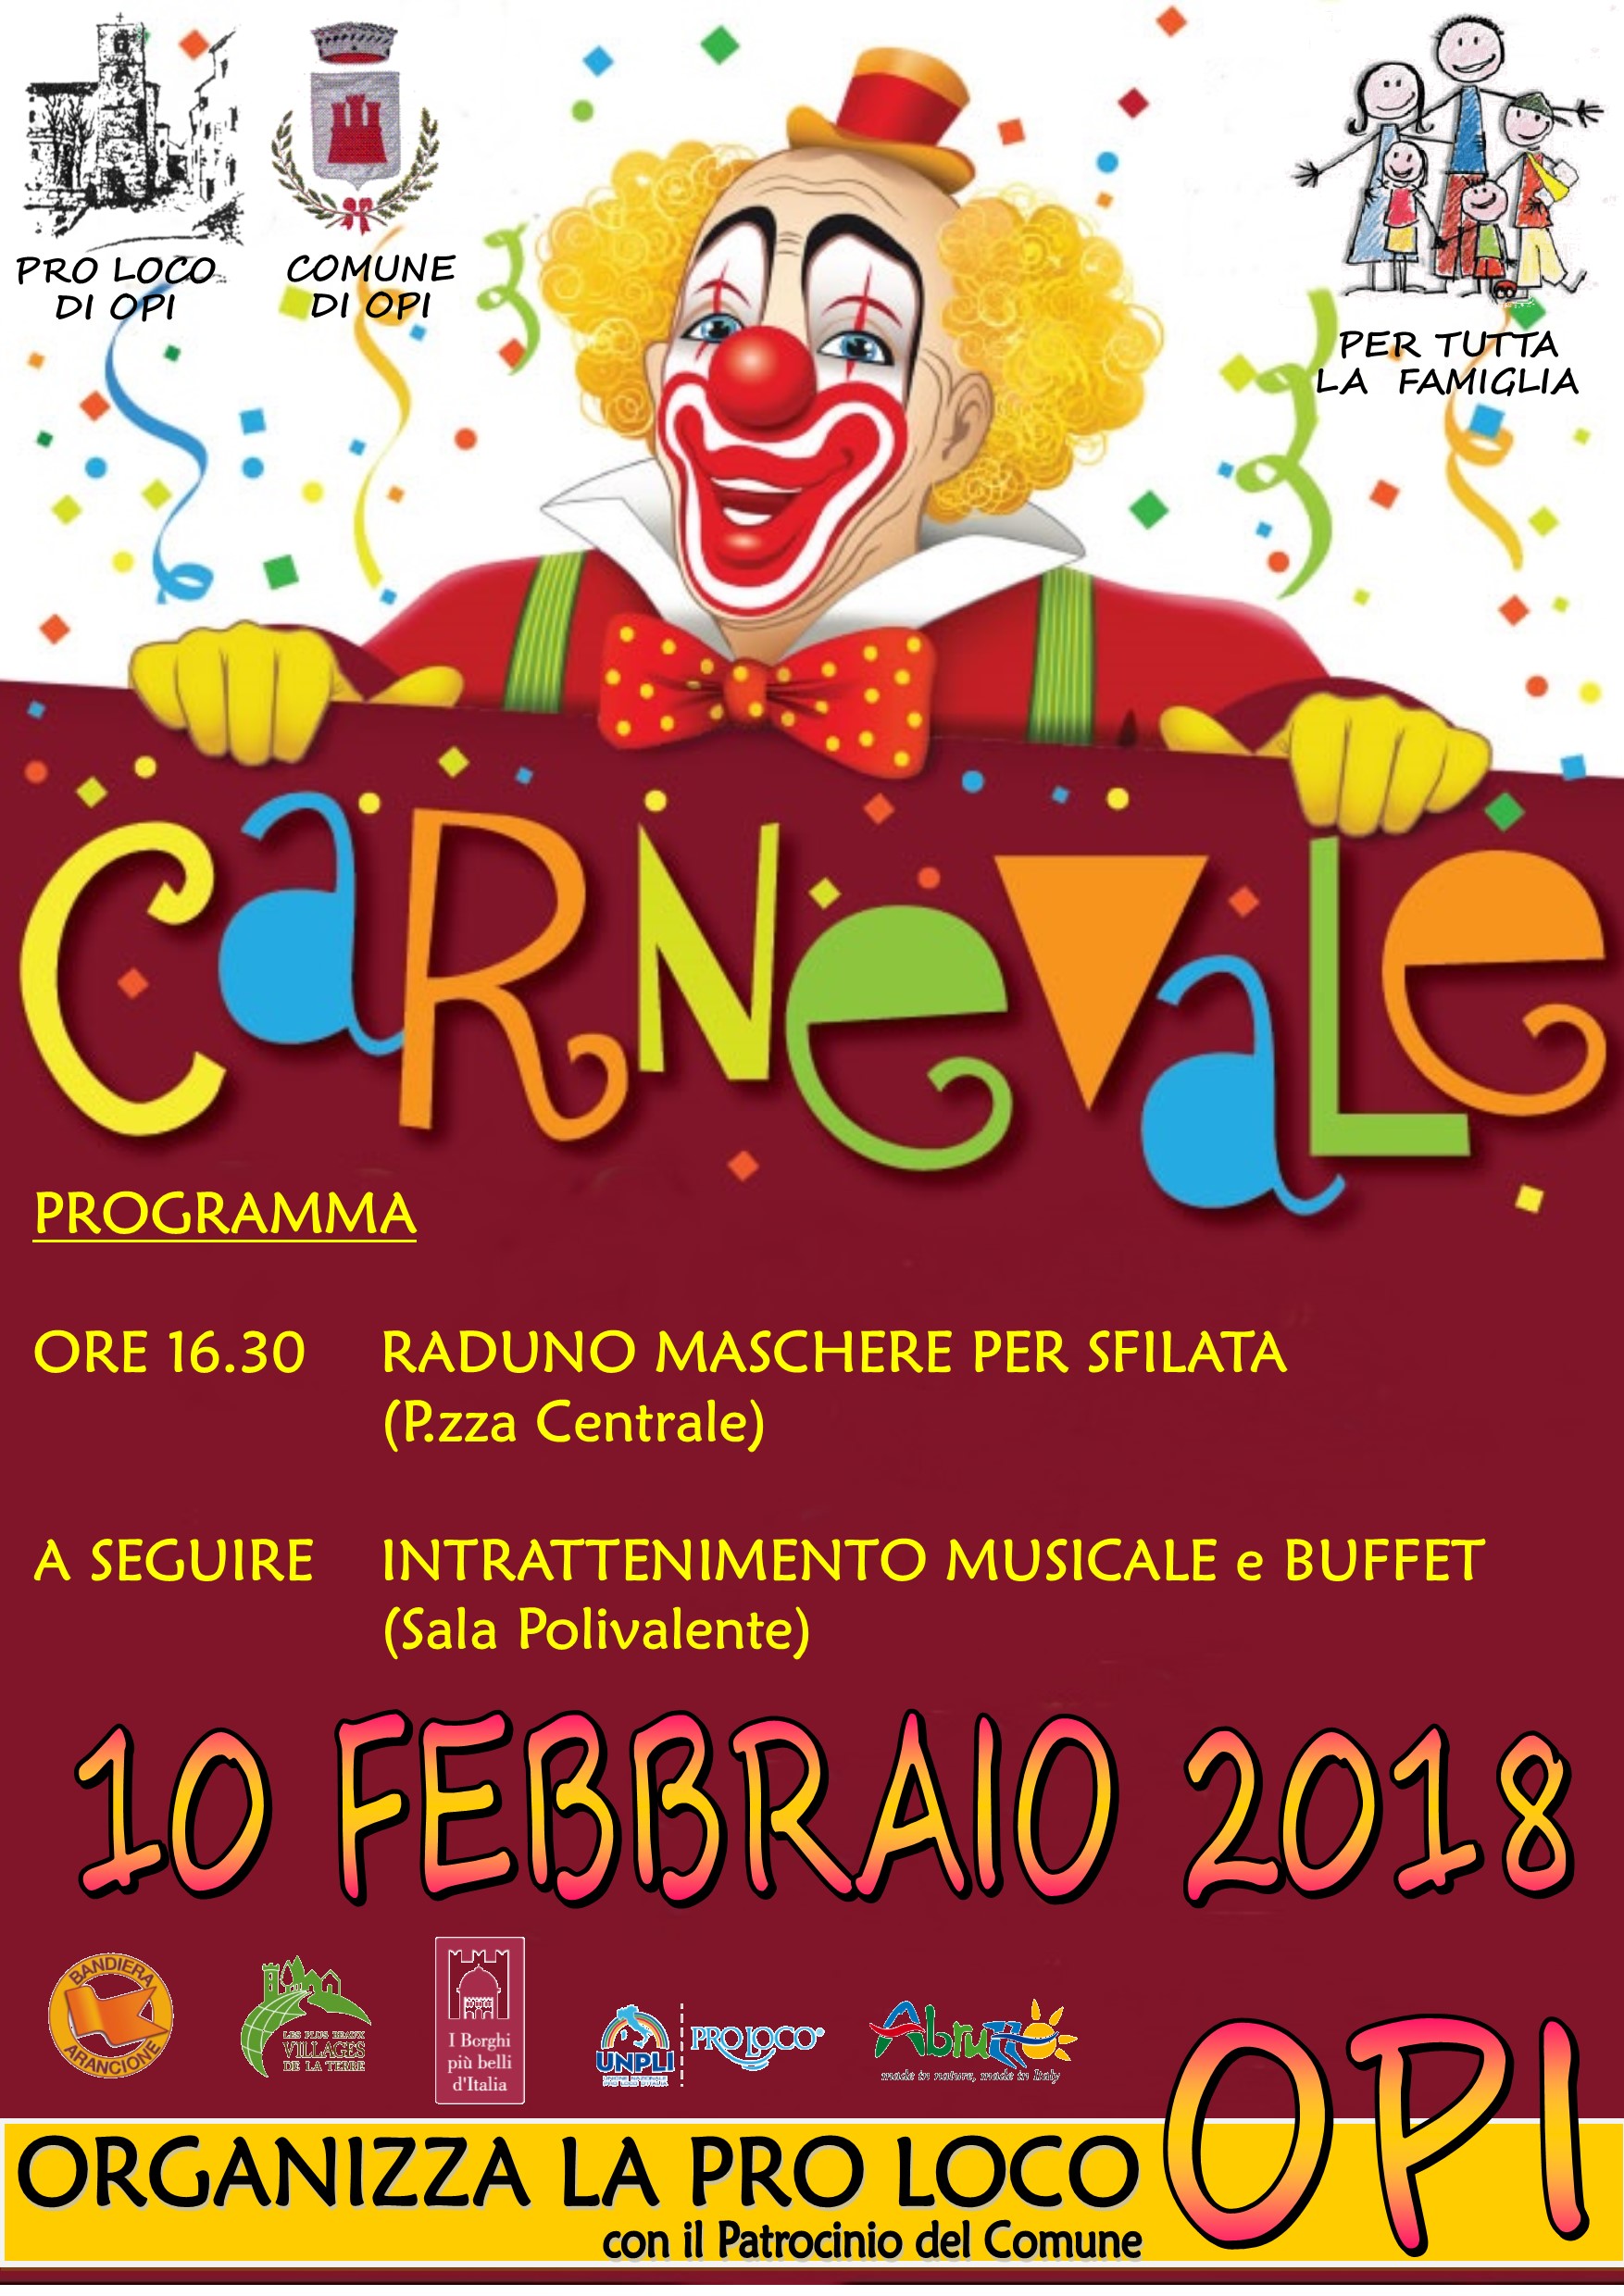 Festa Di Carnevale Dedicata Alla Famiglia Pro Loco Opi Associazione Turistica